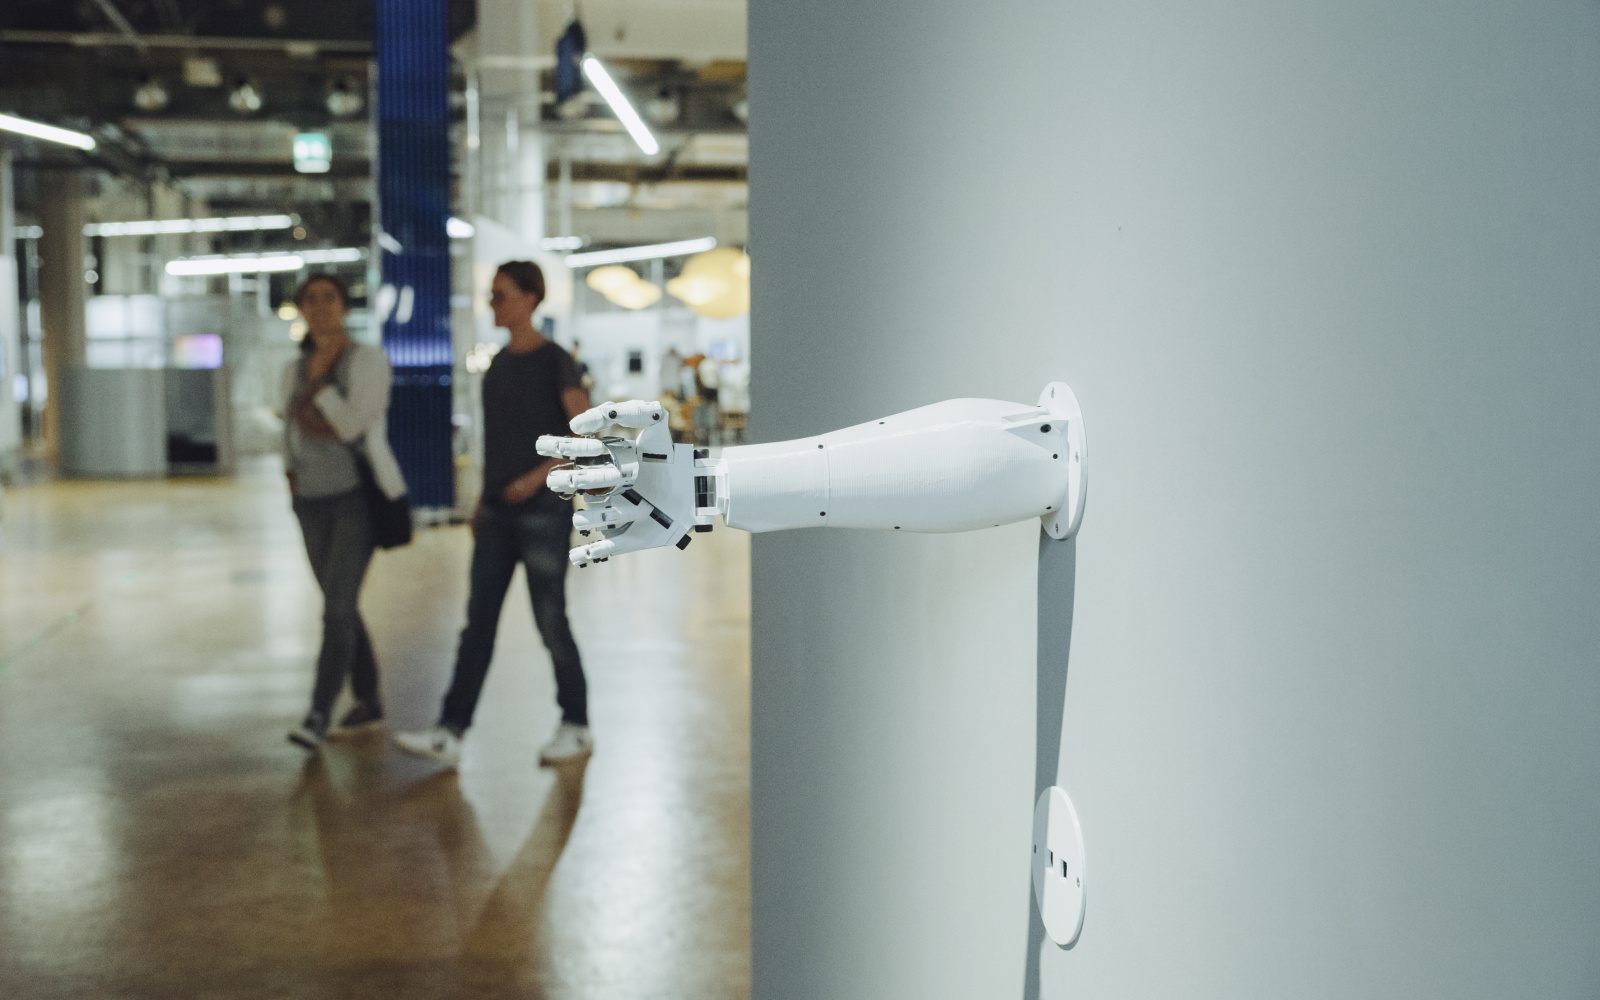 Aus einer Wand ragt eine Roboterarm, dessen Hand etwas umschlossen hält.